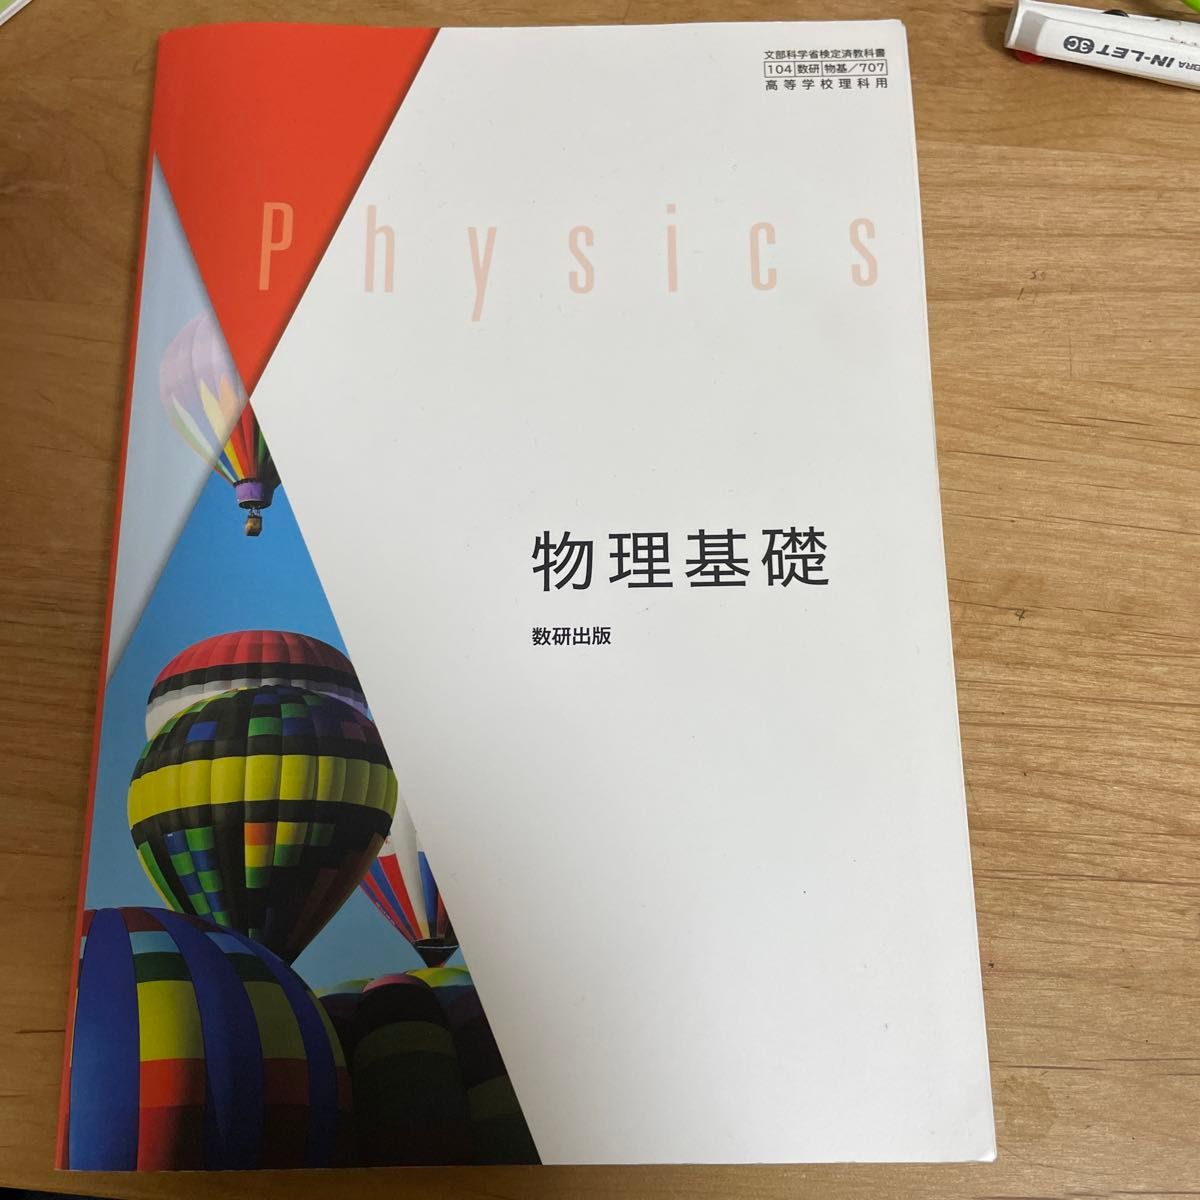 [物基 707] 物理基礎 高校教科書 理科用 数研出版